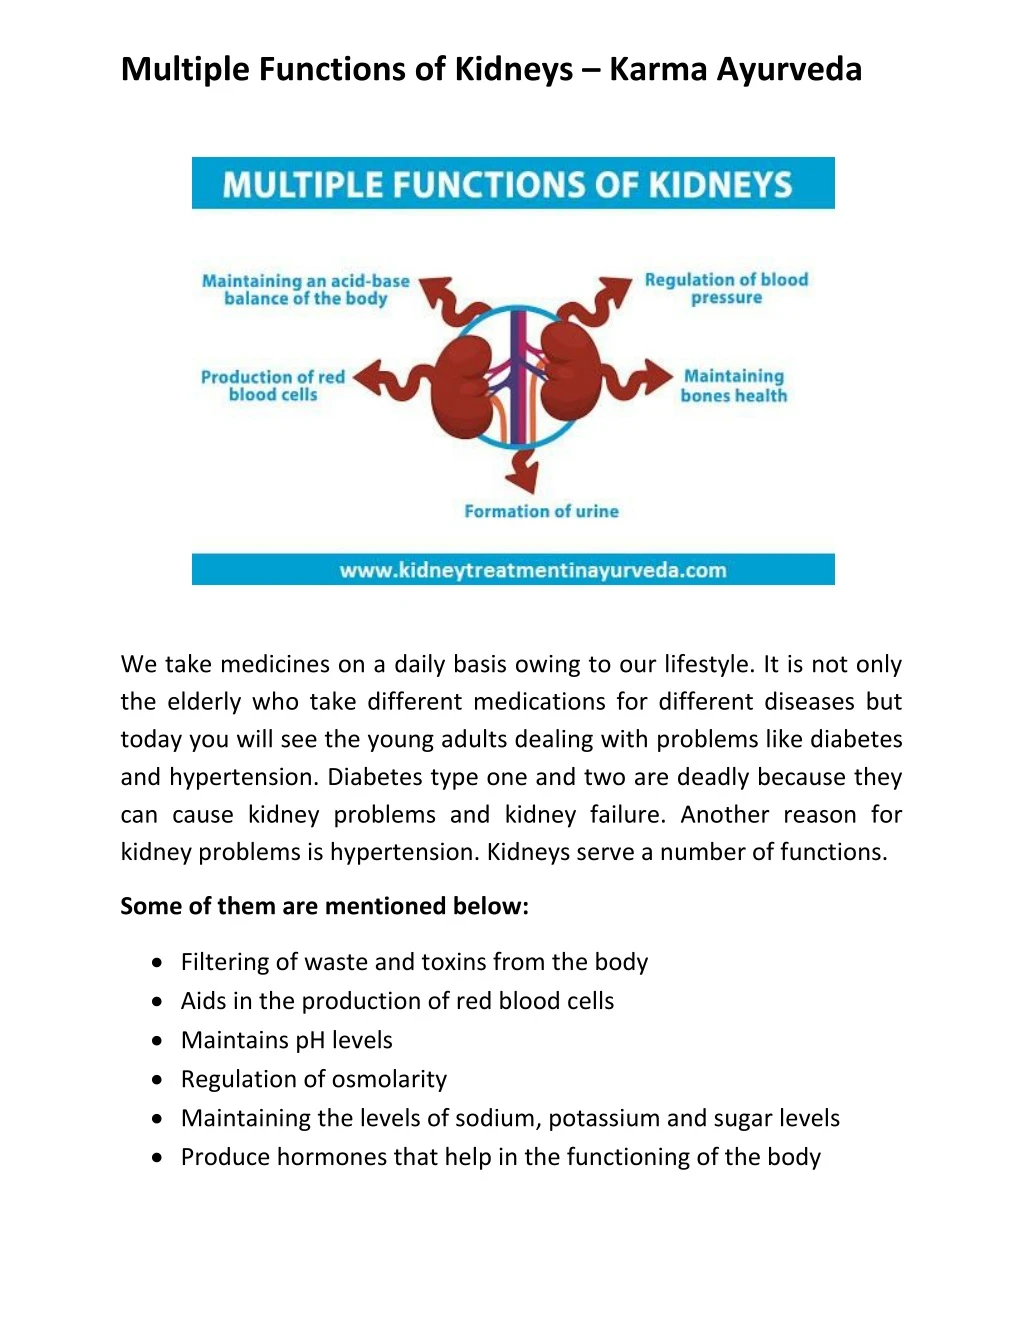 multiple functions of kidneys karma ayurveda